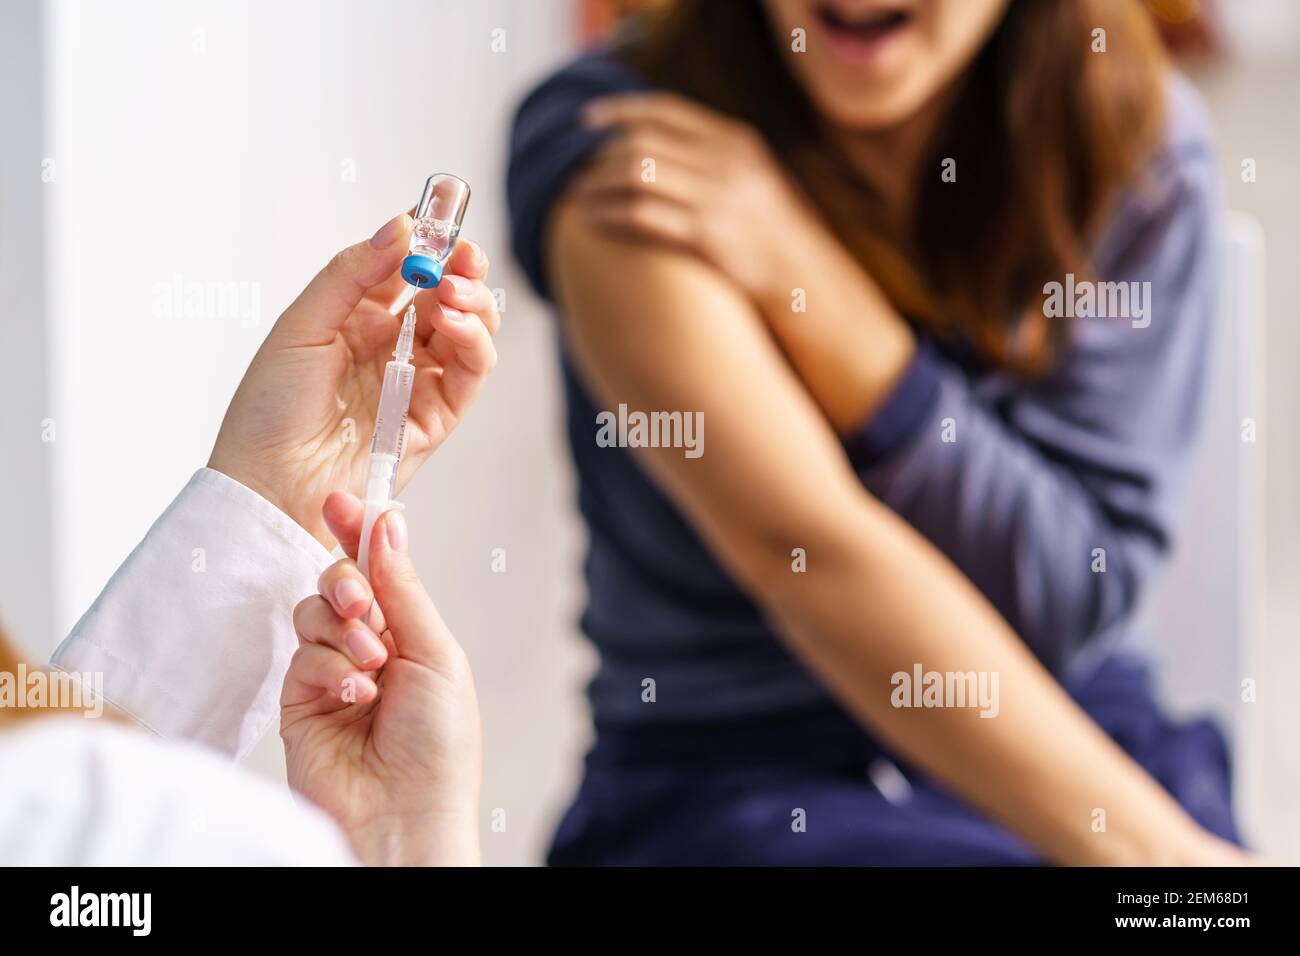 Vaccination concept de santé - mains du médecin ou de l'infirmière une seringue et une ampoule préparant un cliché de virus corona vaccin contre le vph covid-19 ou le vaccin contre la grippe pour u Banque D'Images